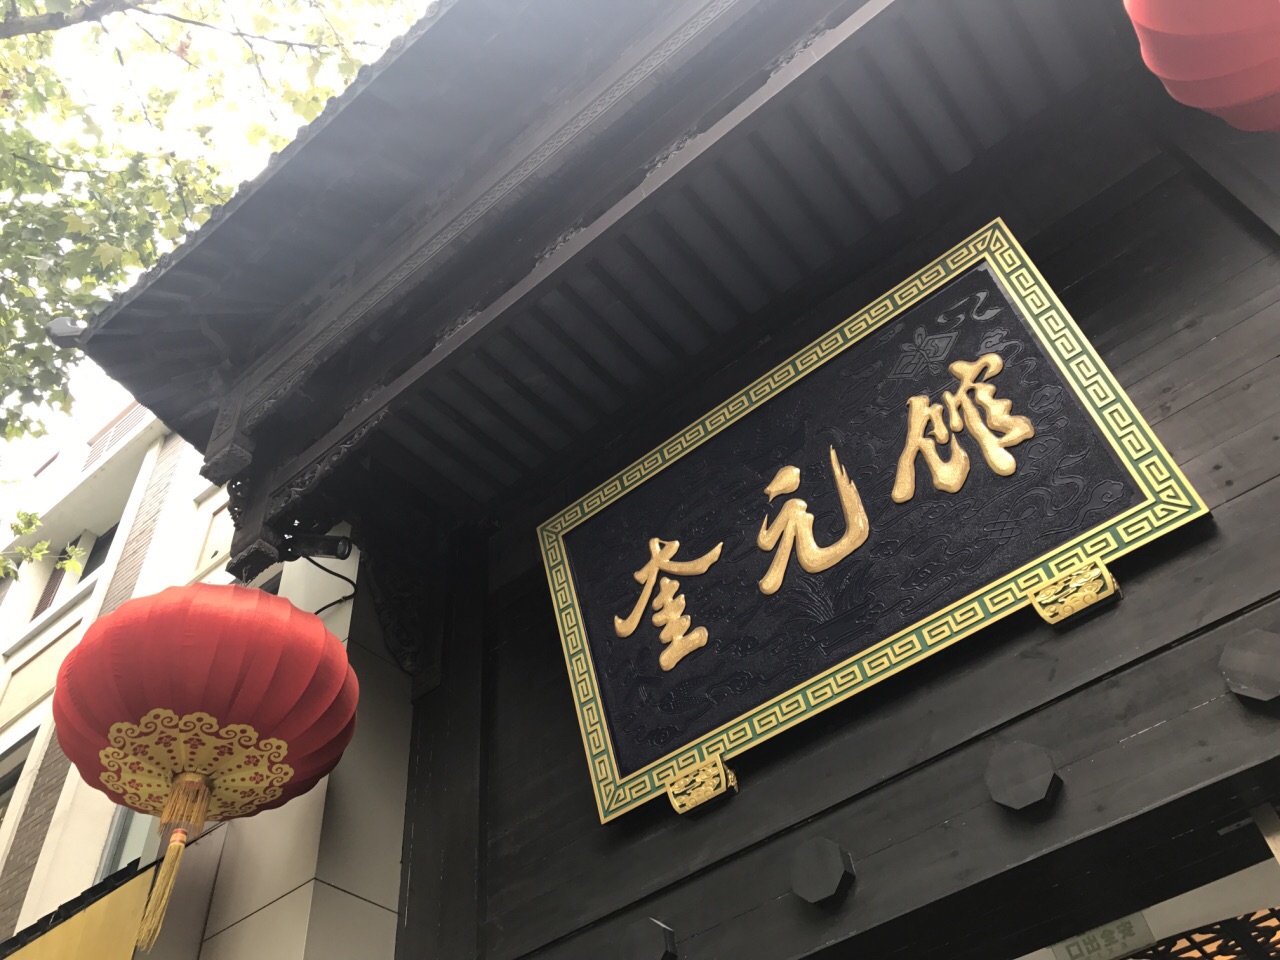 【携程美食林】杭州奎元馆(解放路总店)餐馆,中午12点多到的,正好是饭